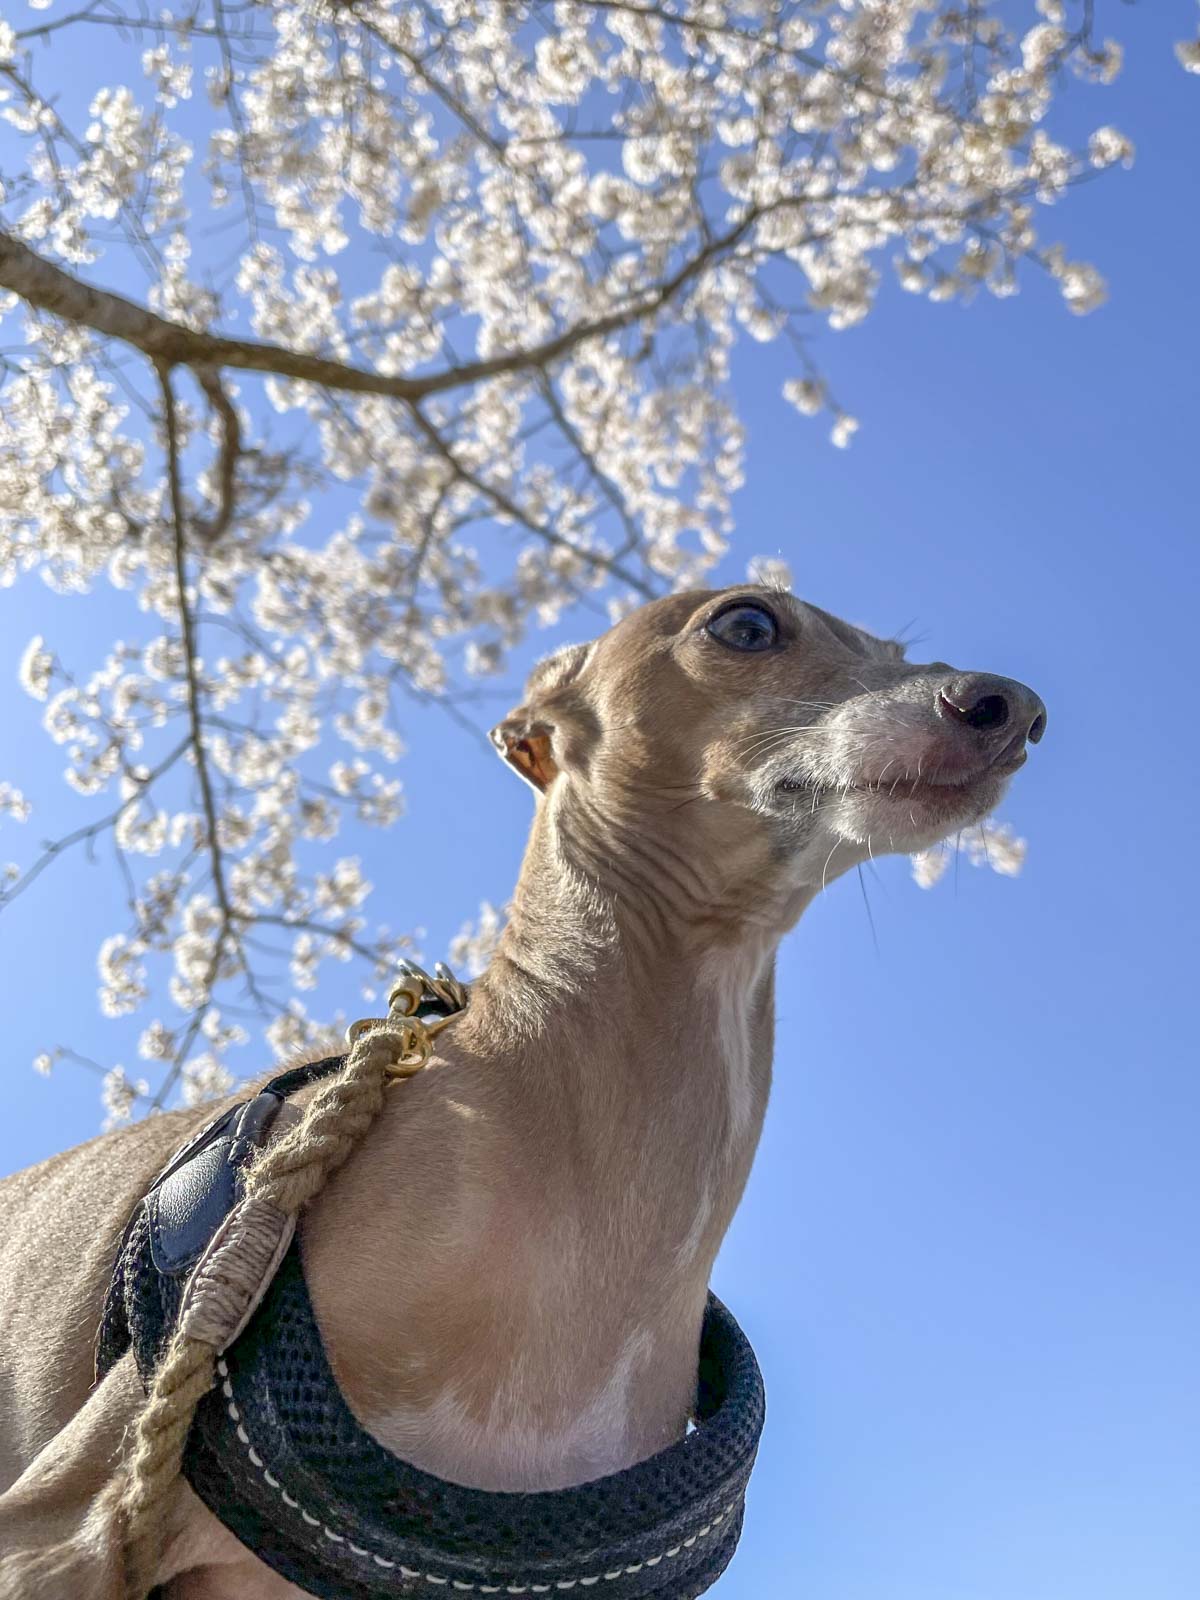 満開の桜の枝を背景にした犬のステラの写真